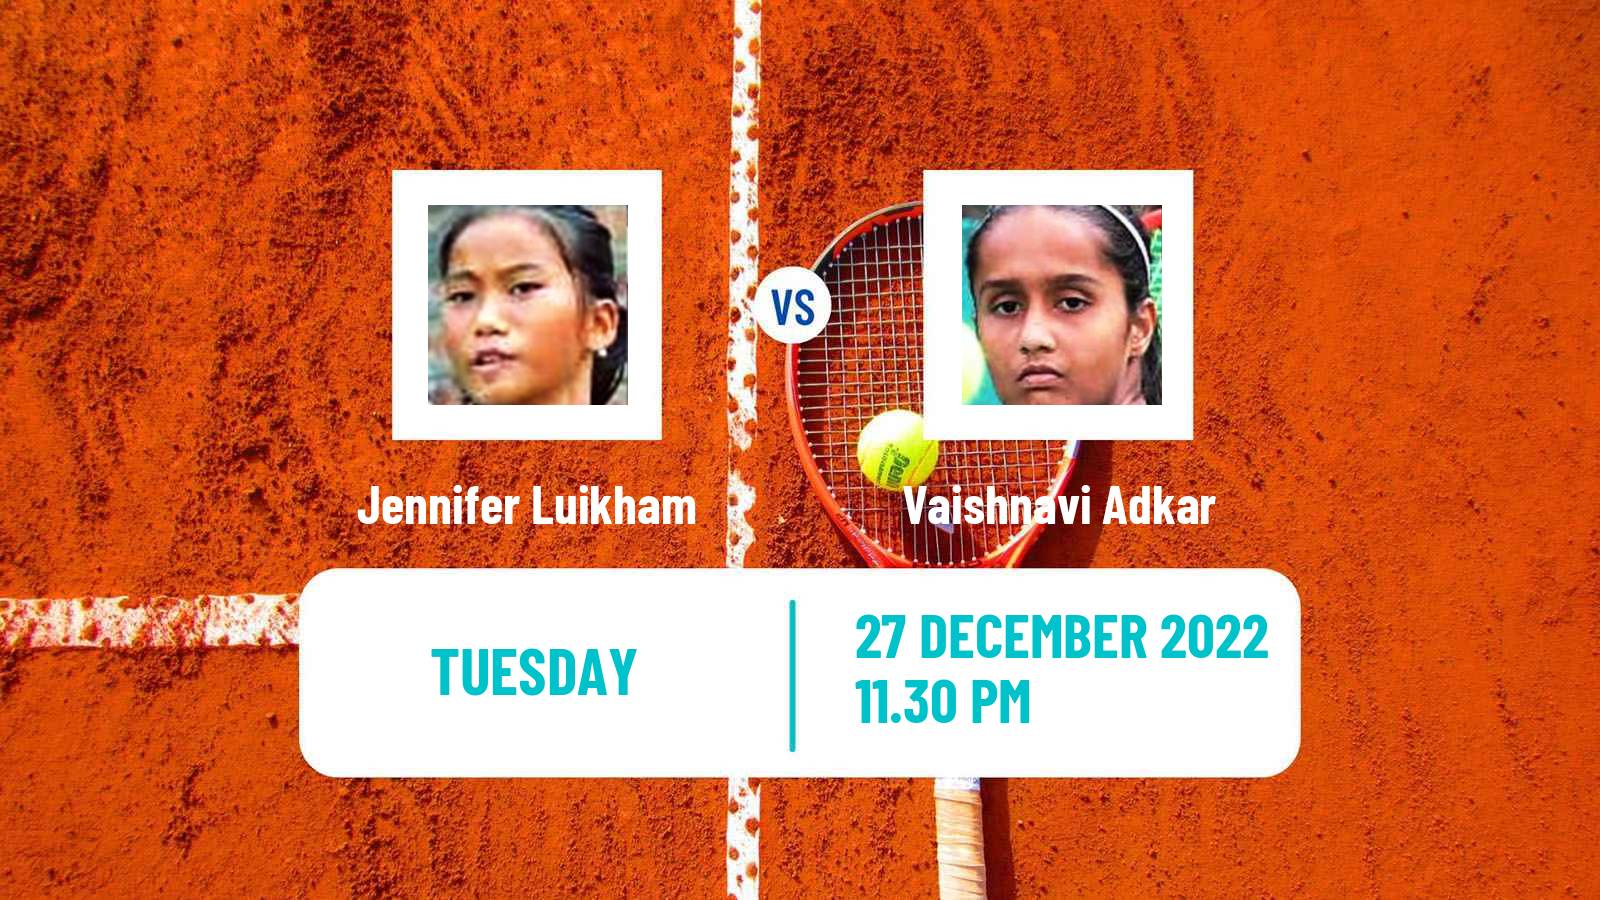 Tennis ITF Tournaments Jennifer Luikham - Vaishnavi Adkar